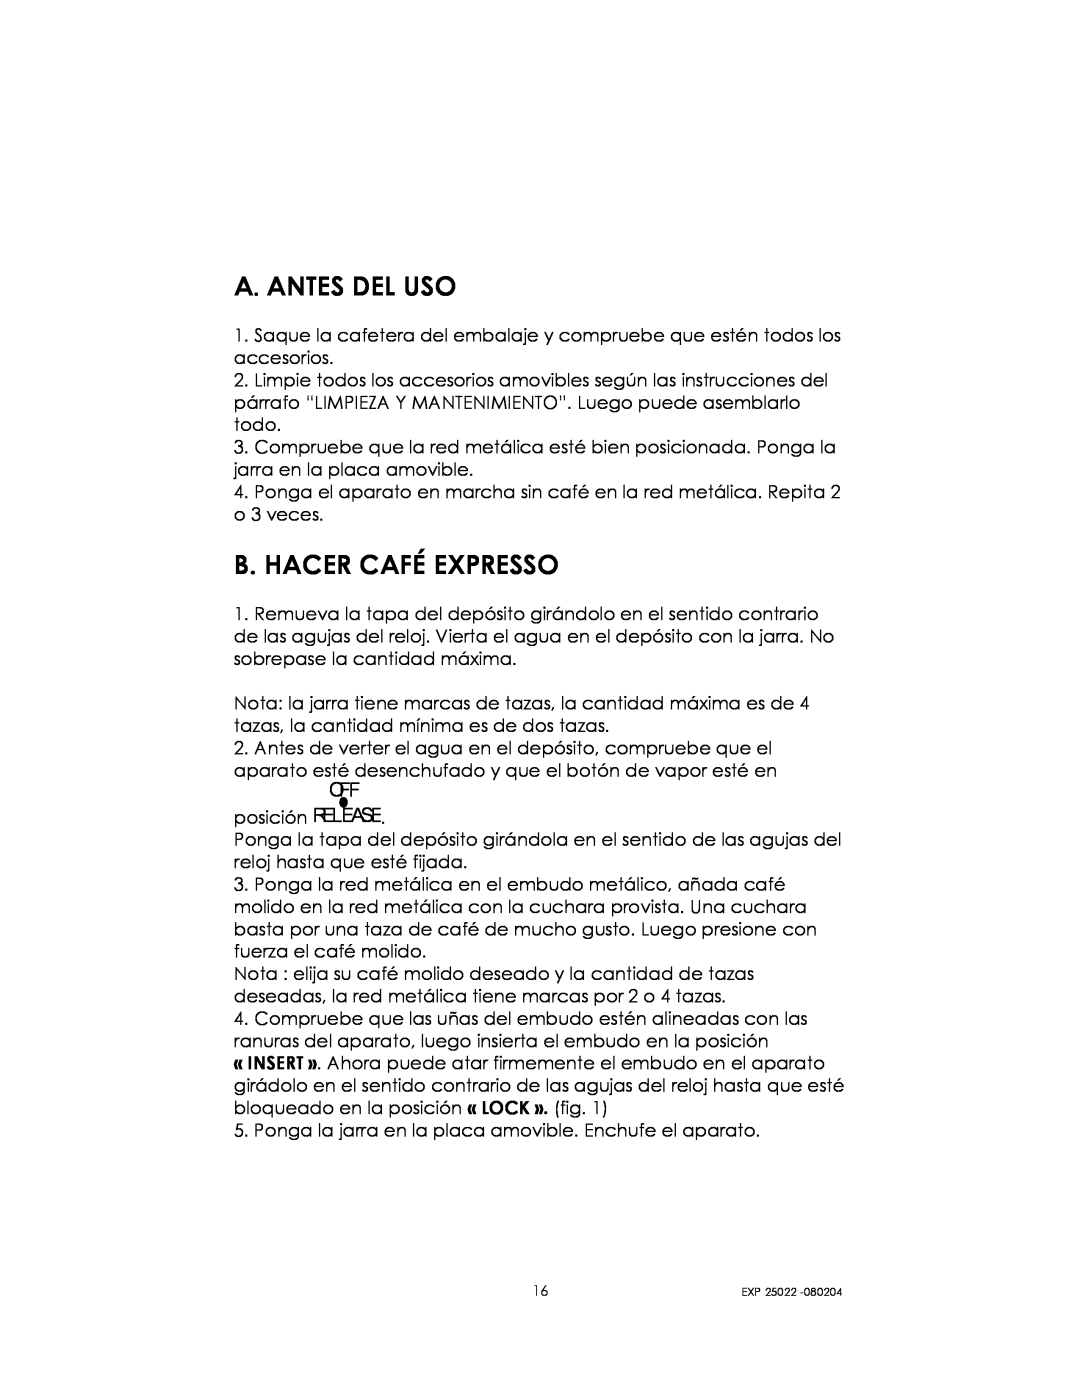 Kalorik EXP 25022 manual A. Antes Del Uso, B. Hacer Café Expresso 